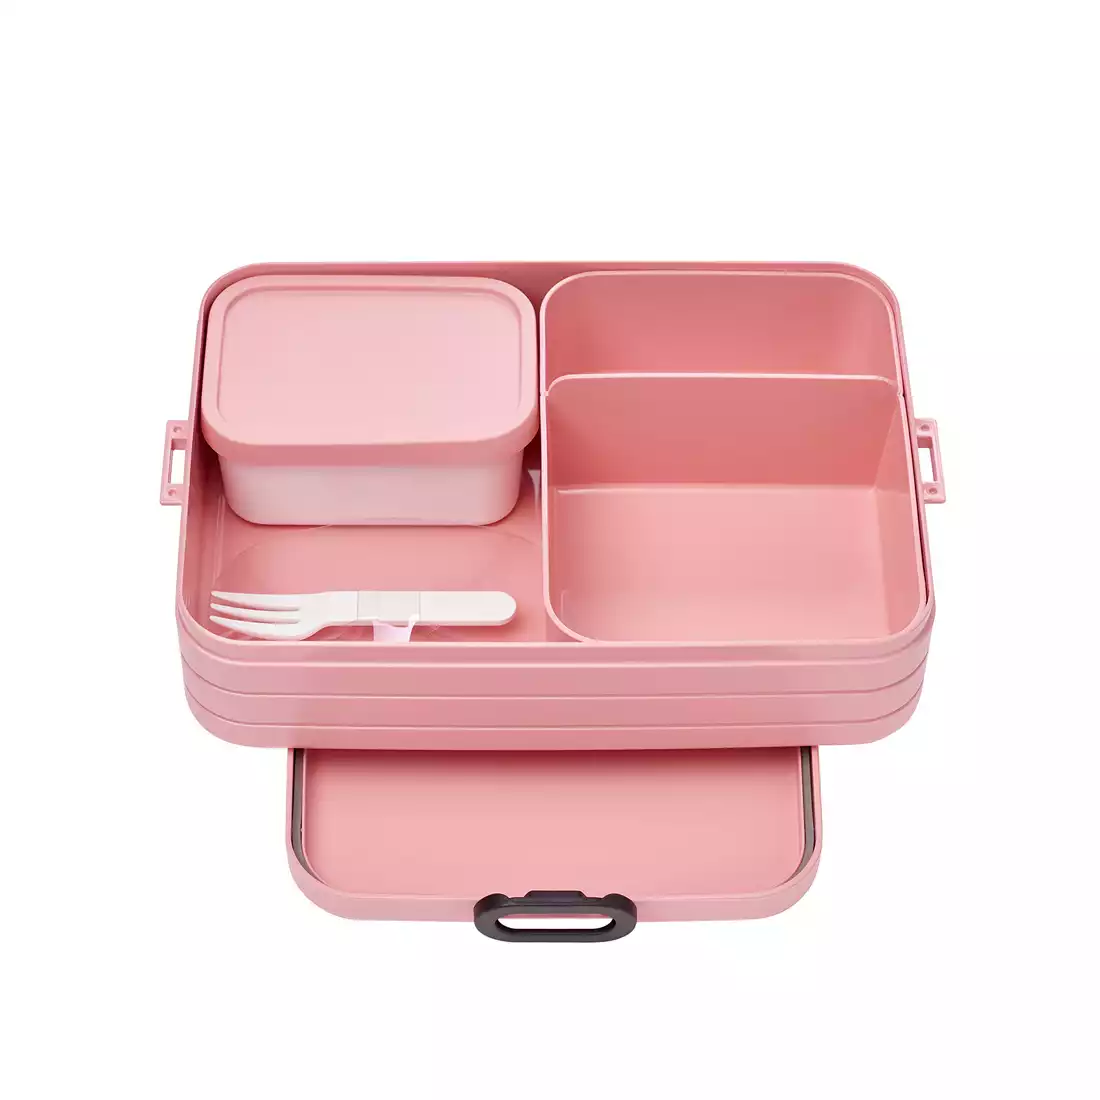 Mepal Take a Break Bento Nordic Pink lunchbox, růžový